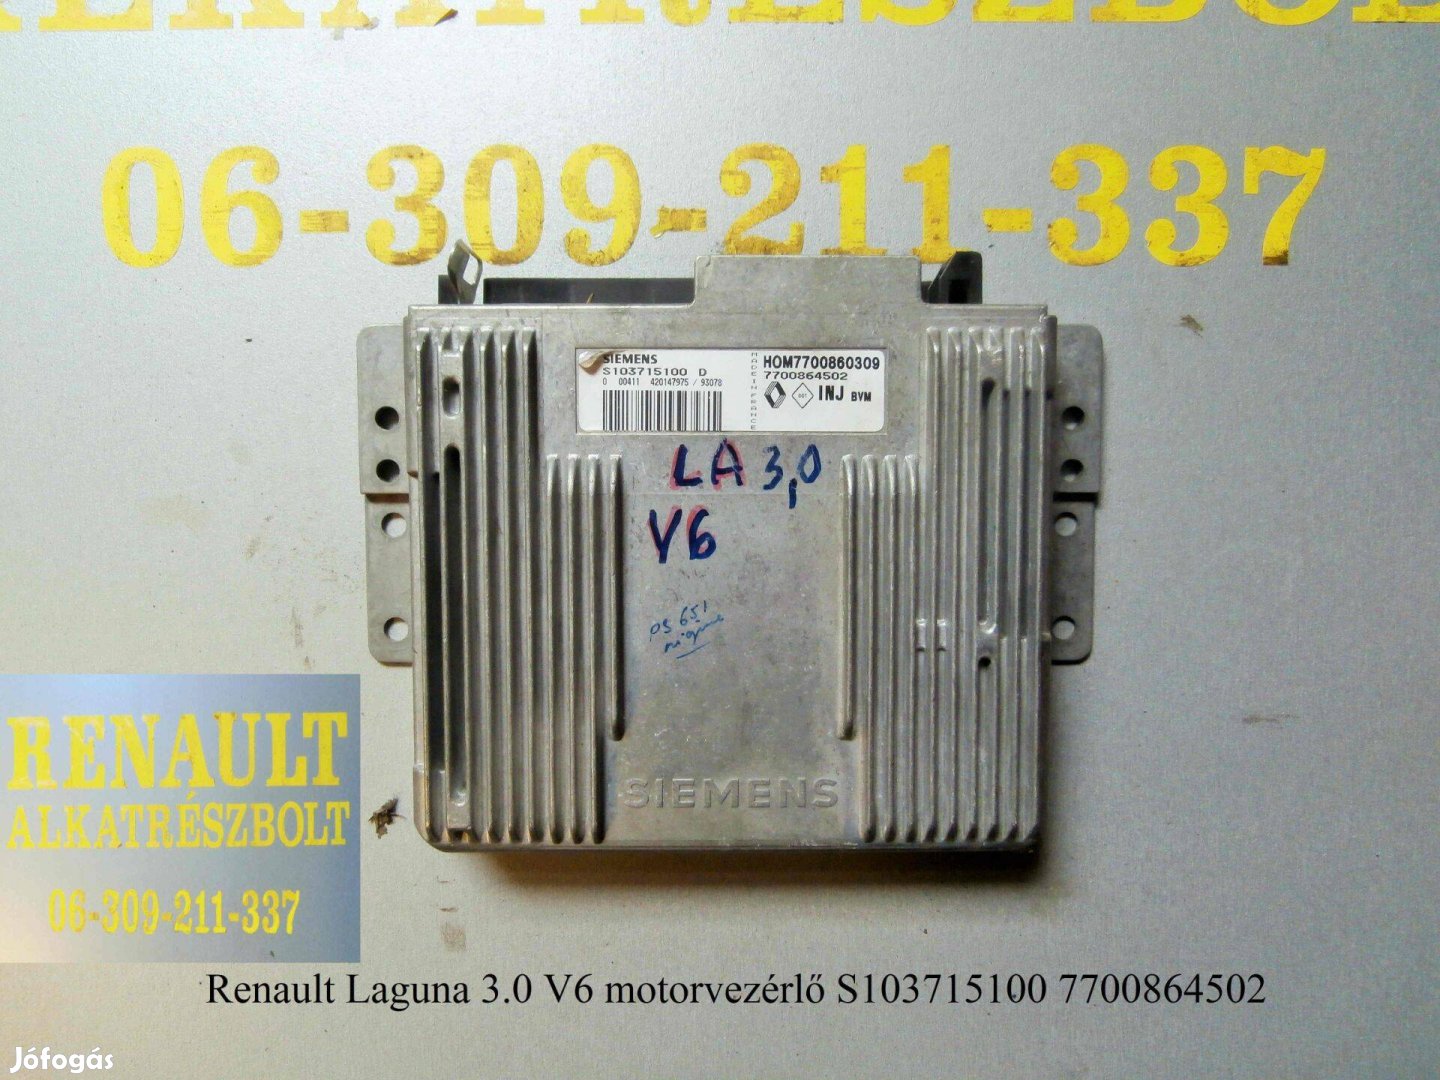 Renault Laguna 3.0 V6 motorvezérlő S103715100 7700864502